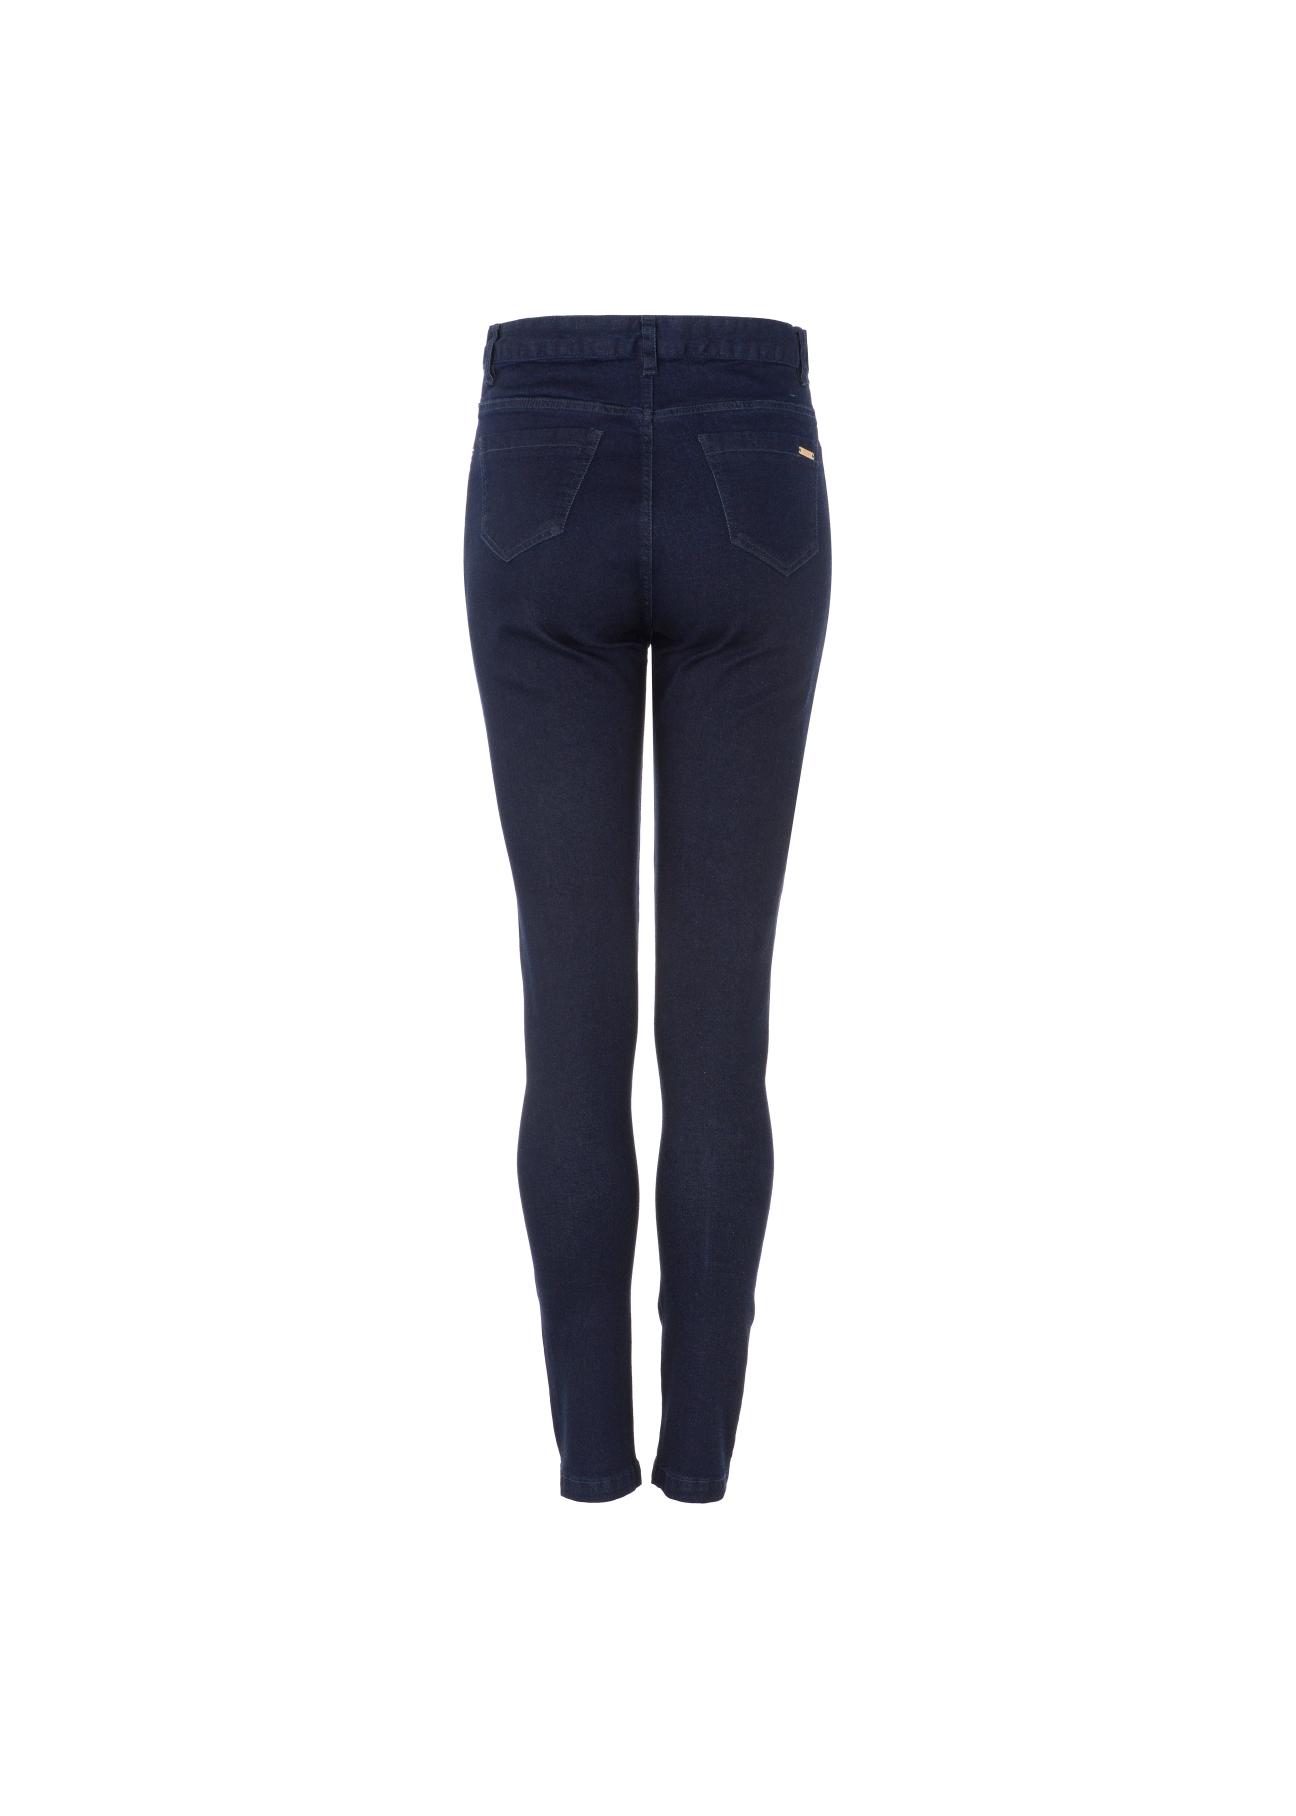 Granatowe spodnie skinny damskie SPODT-0046-69(Z21)